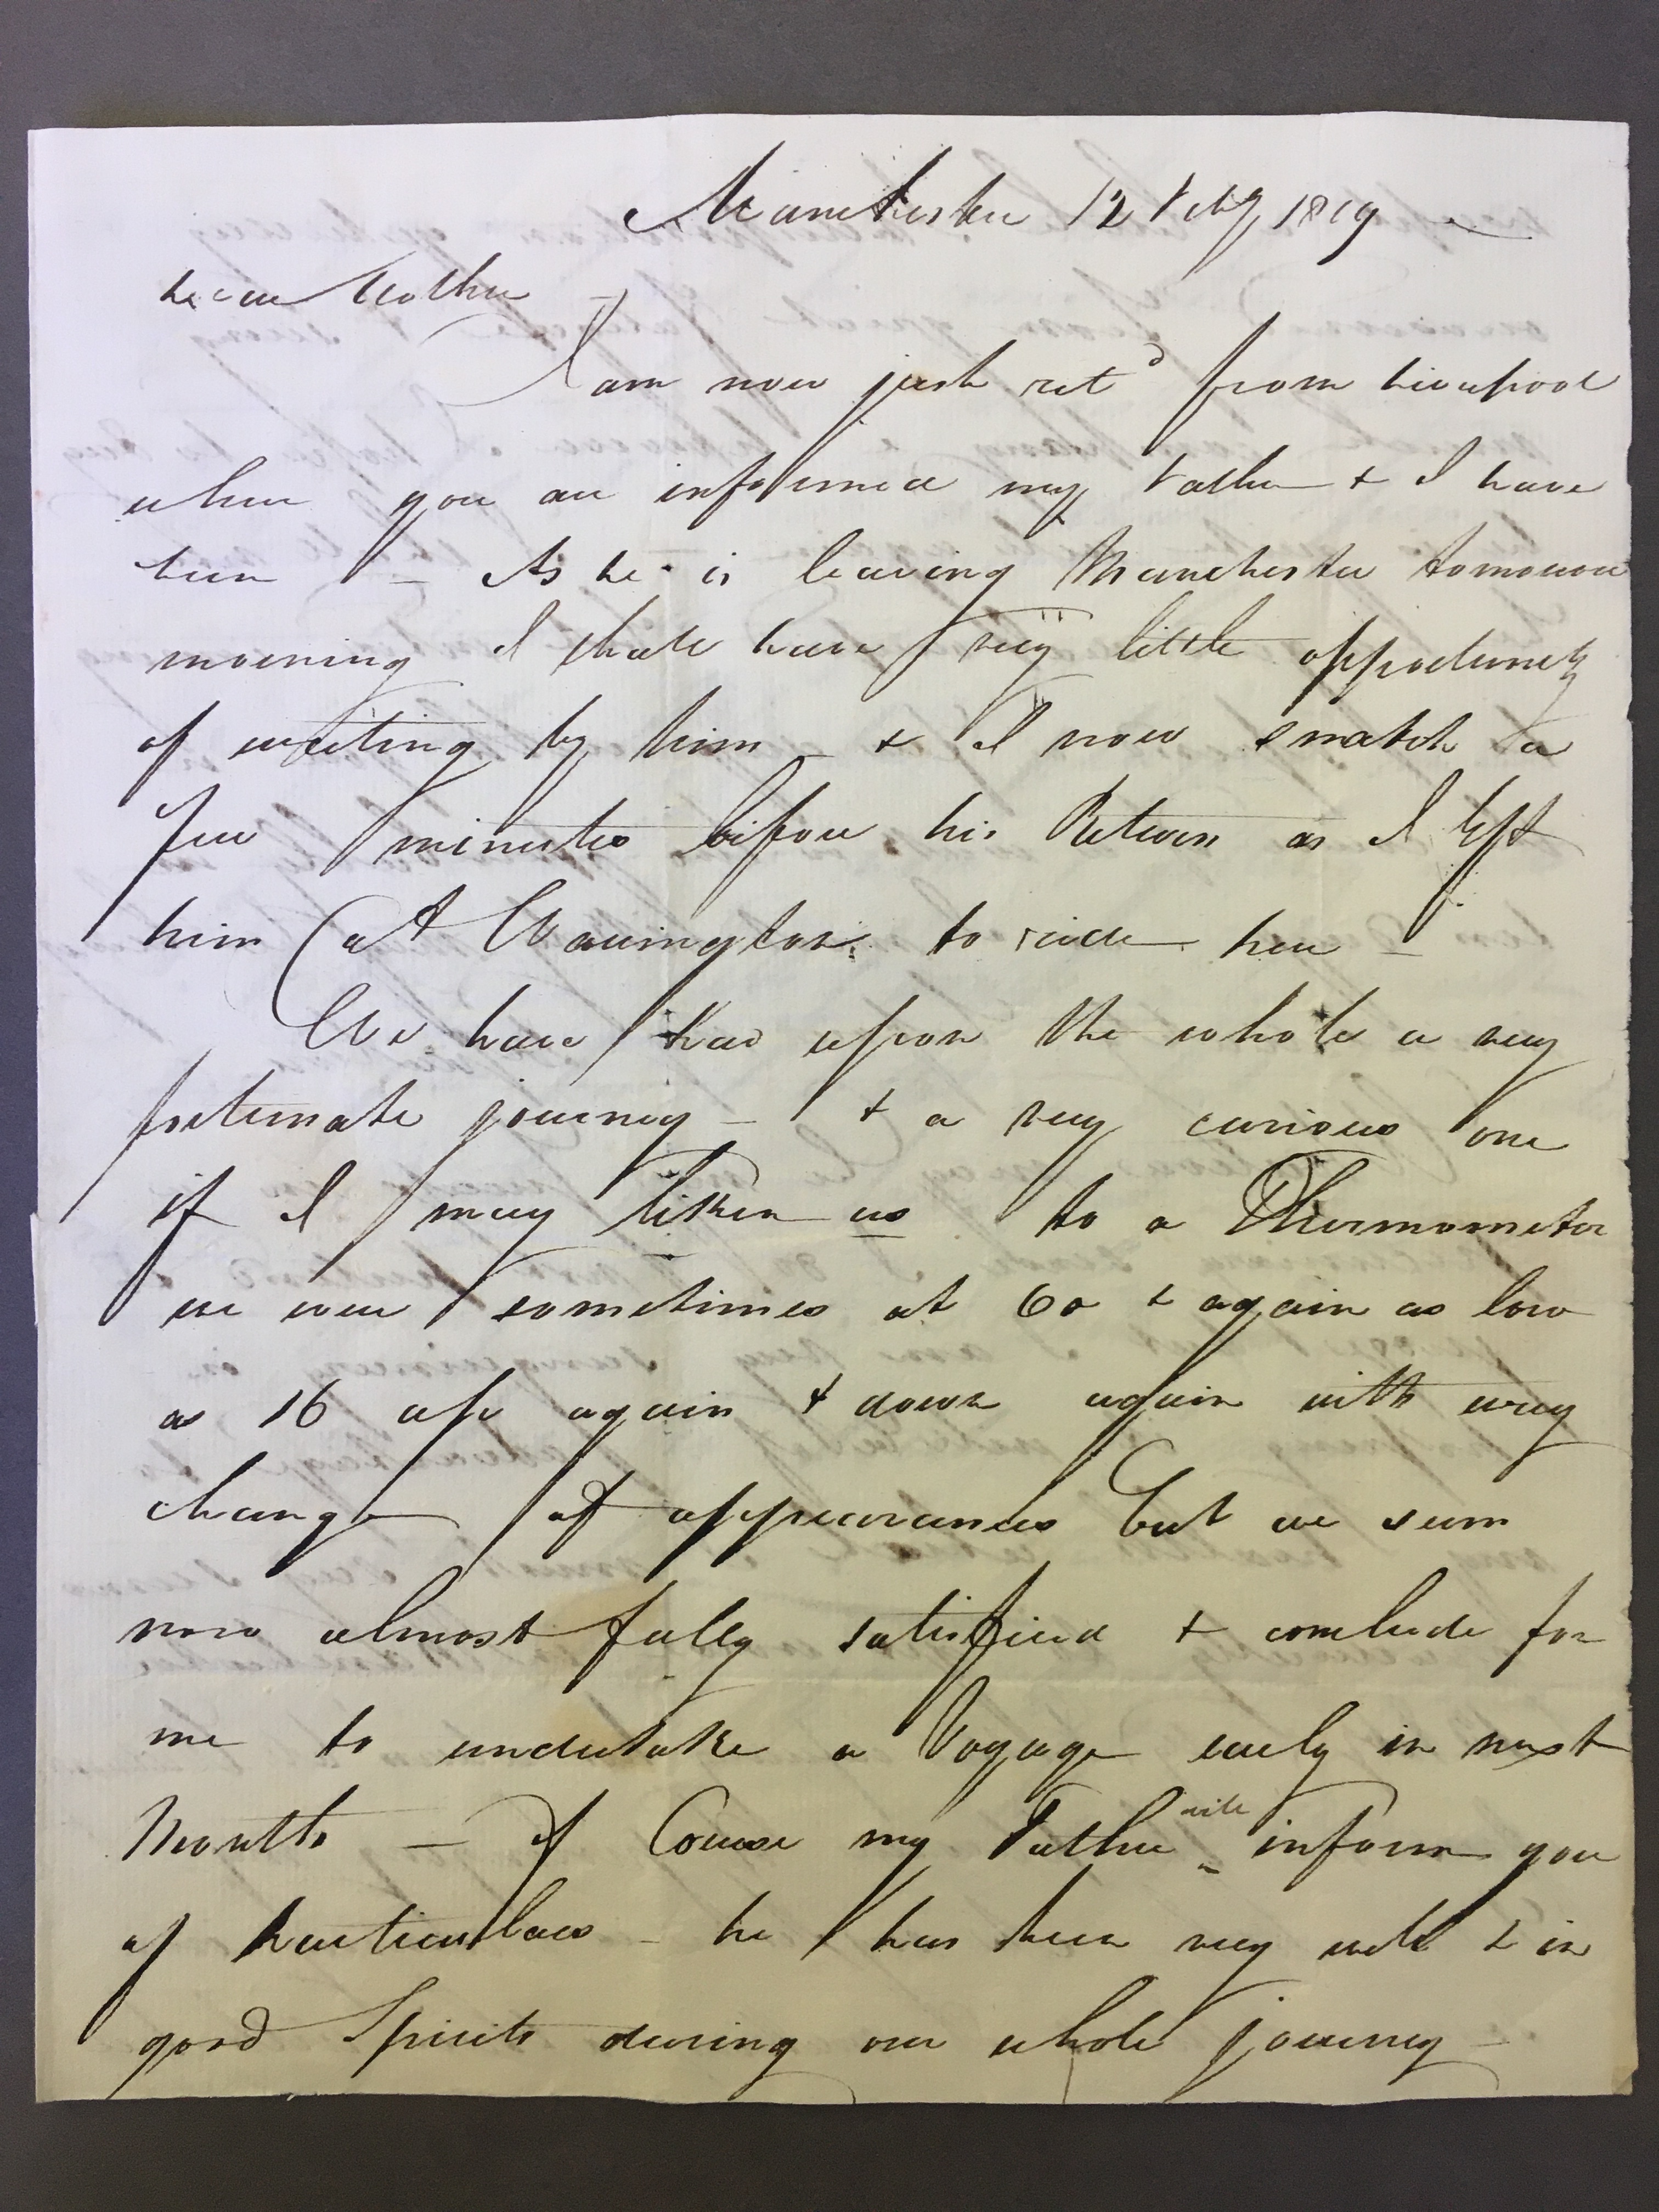 Image #1 of letter: John Longsdon to Elizabeth Longsdon (snr), 12 February 1809